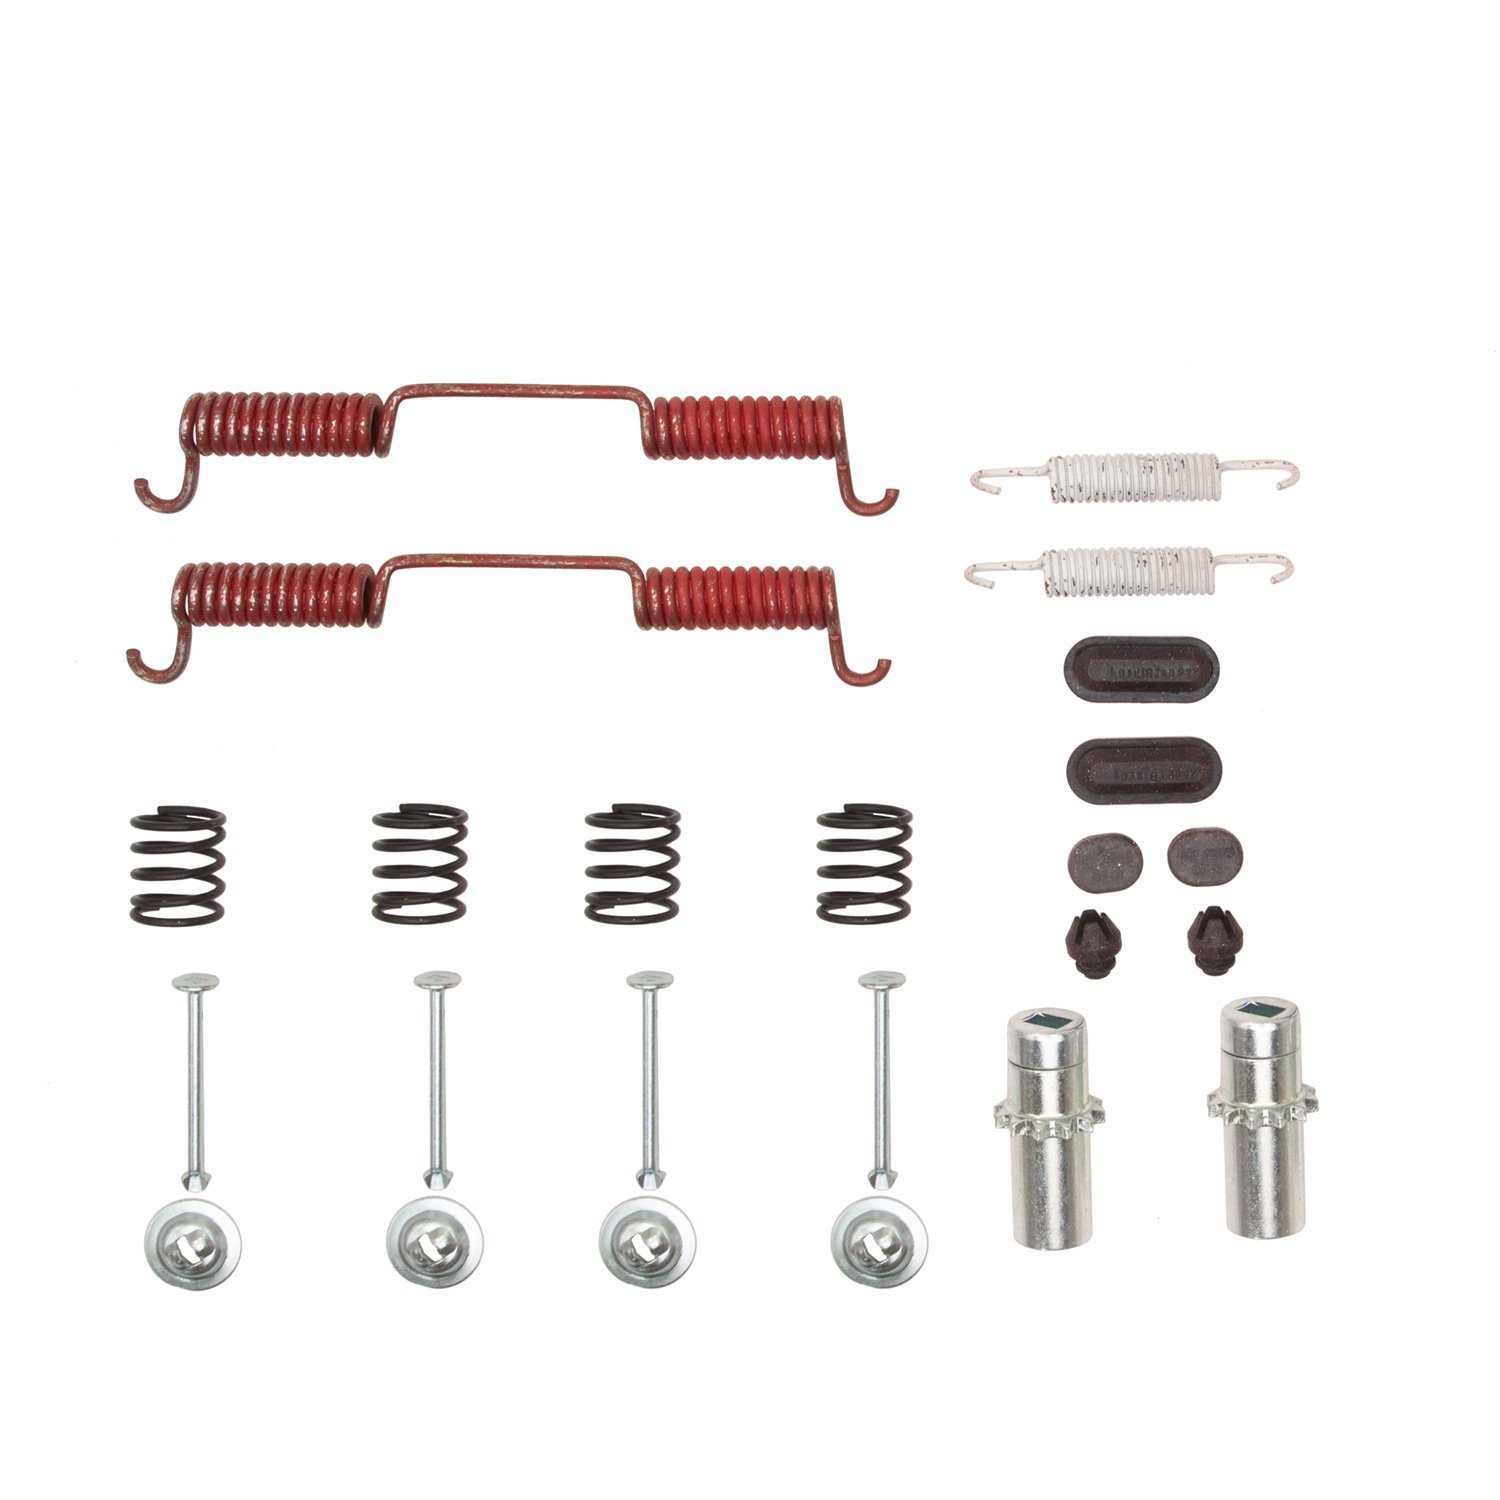 370-67031 Drum Brake Hardware Kit, Fits Select Infiniti/Nissan, Position: Parking